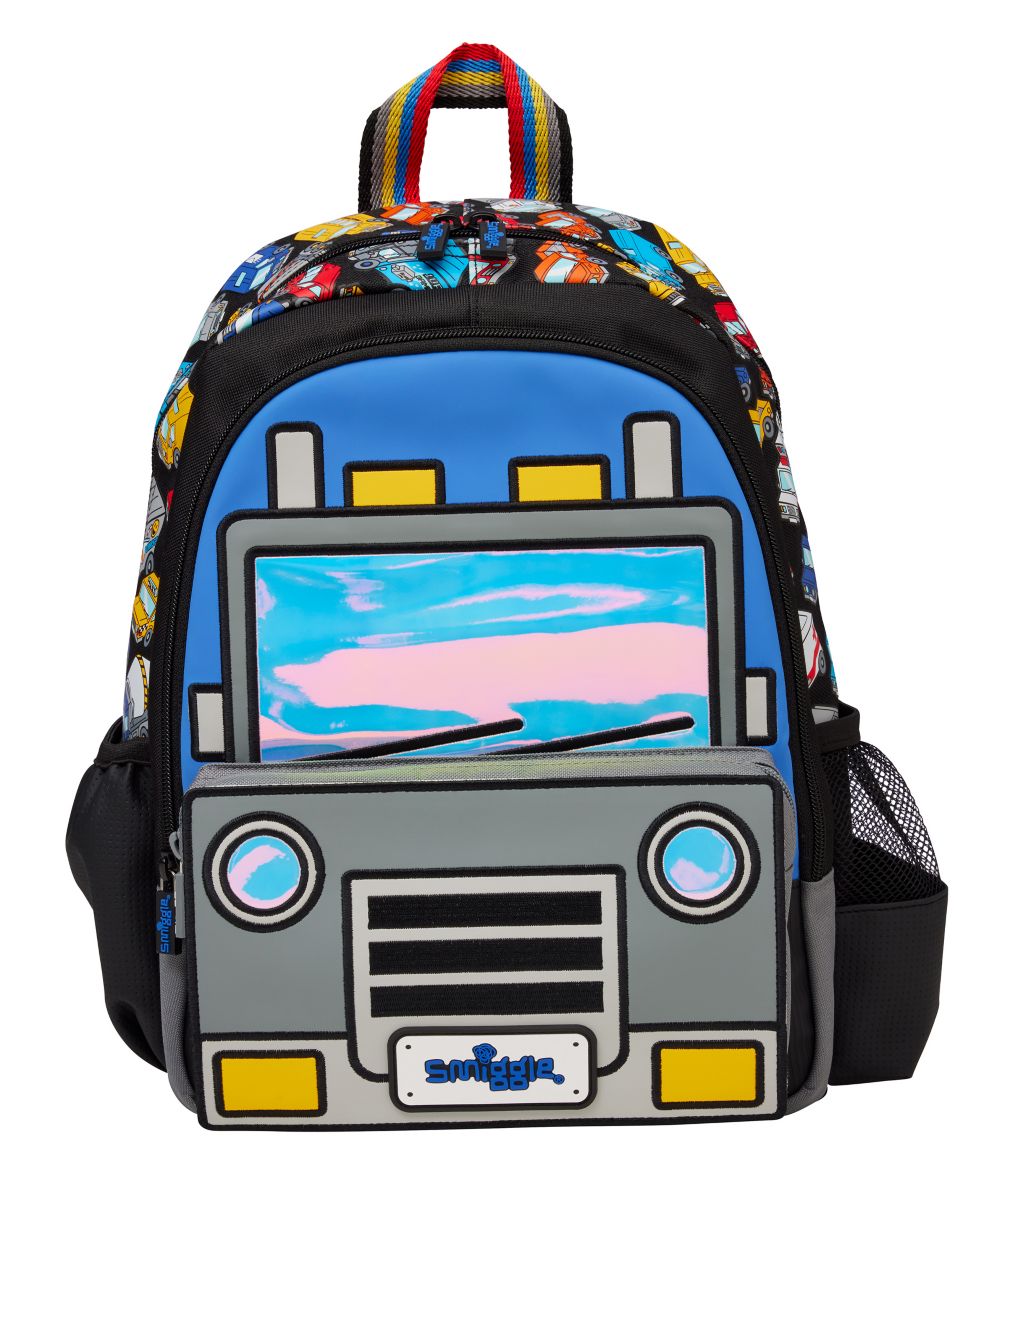 Kids' Patterned Backpack image 1